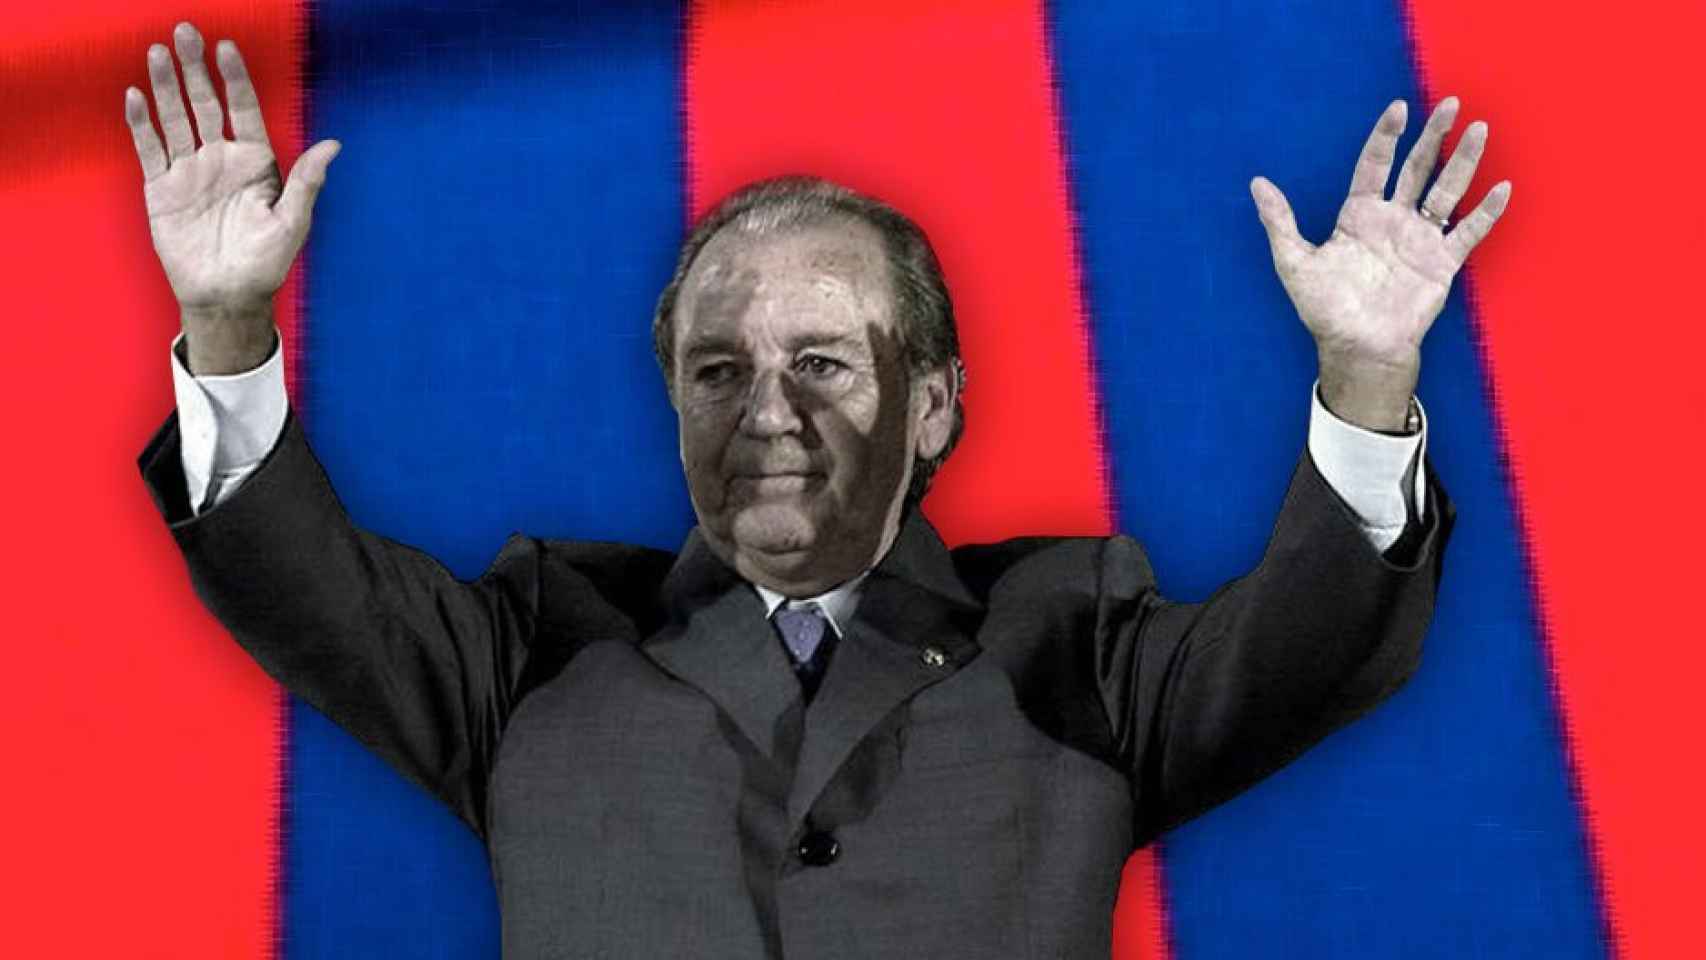 El expresidente del Barça José Luis Núñez se despide con los colores del club / FOTOMONTAJE DE CULEMANÍA